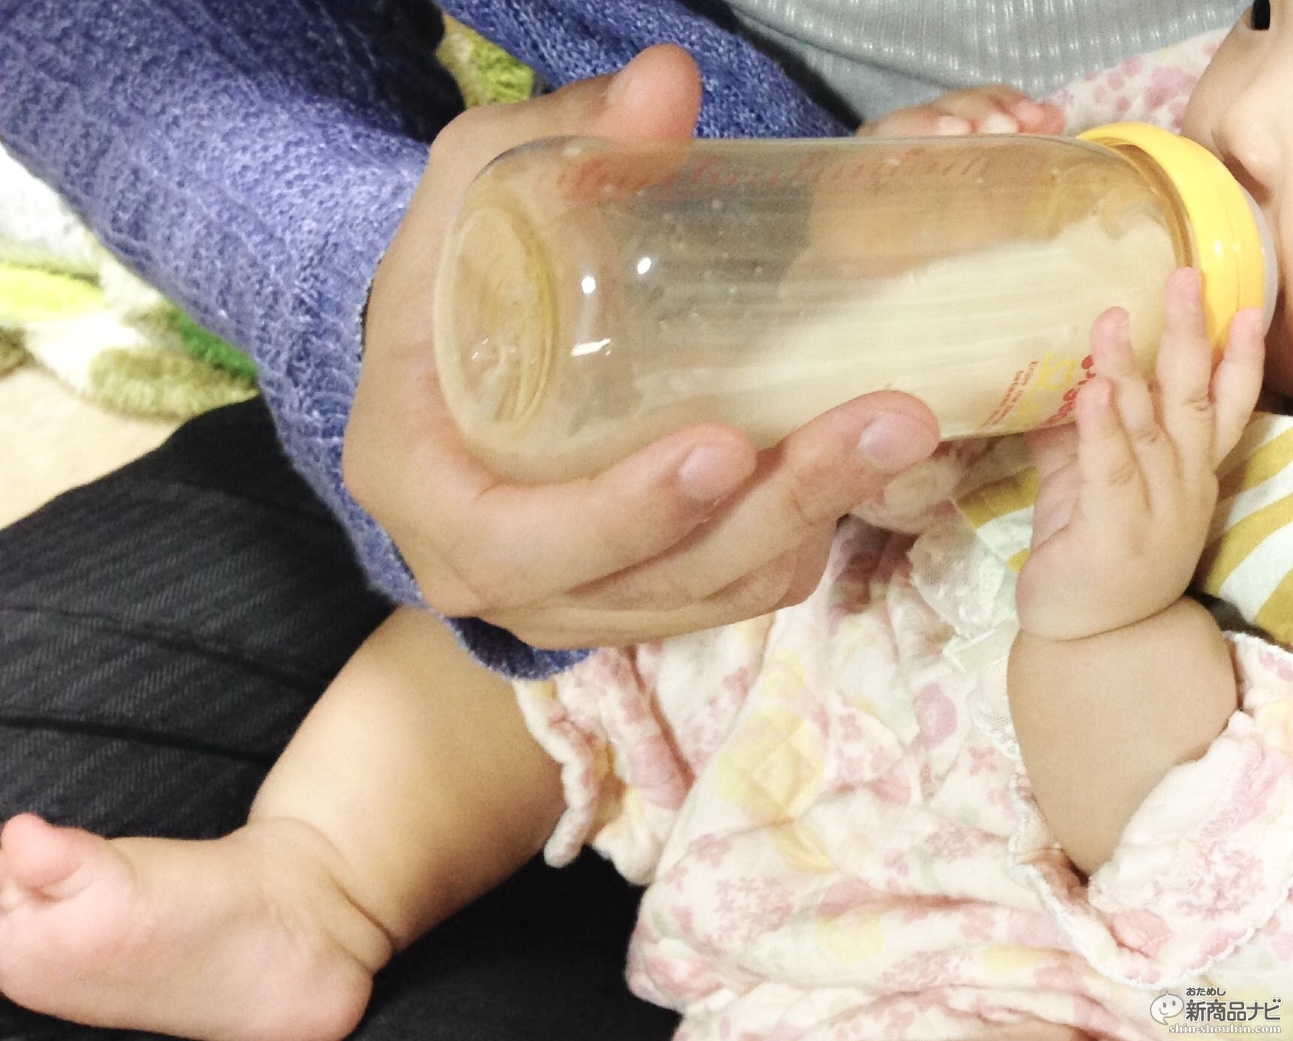 おためし新商品ナビ » Blog Archive » ついに解禁された乳児用液体